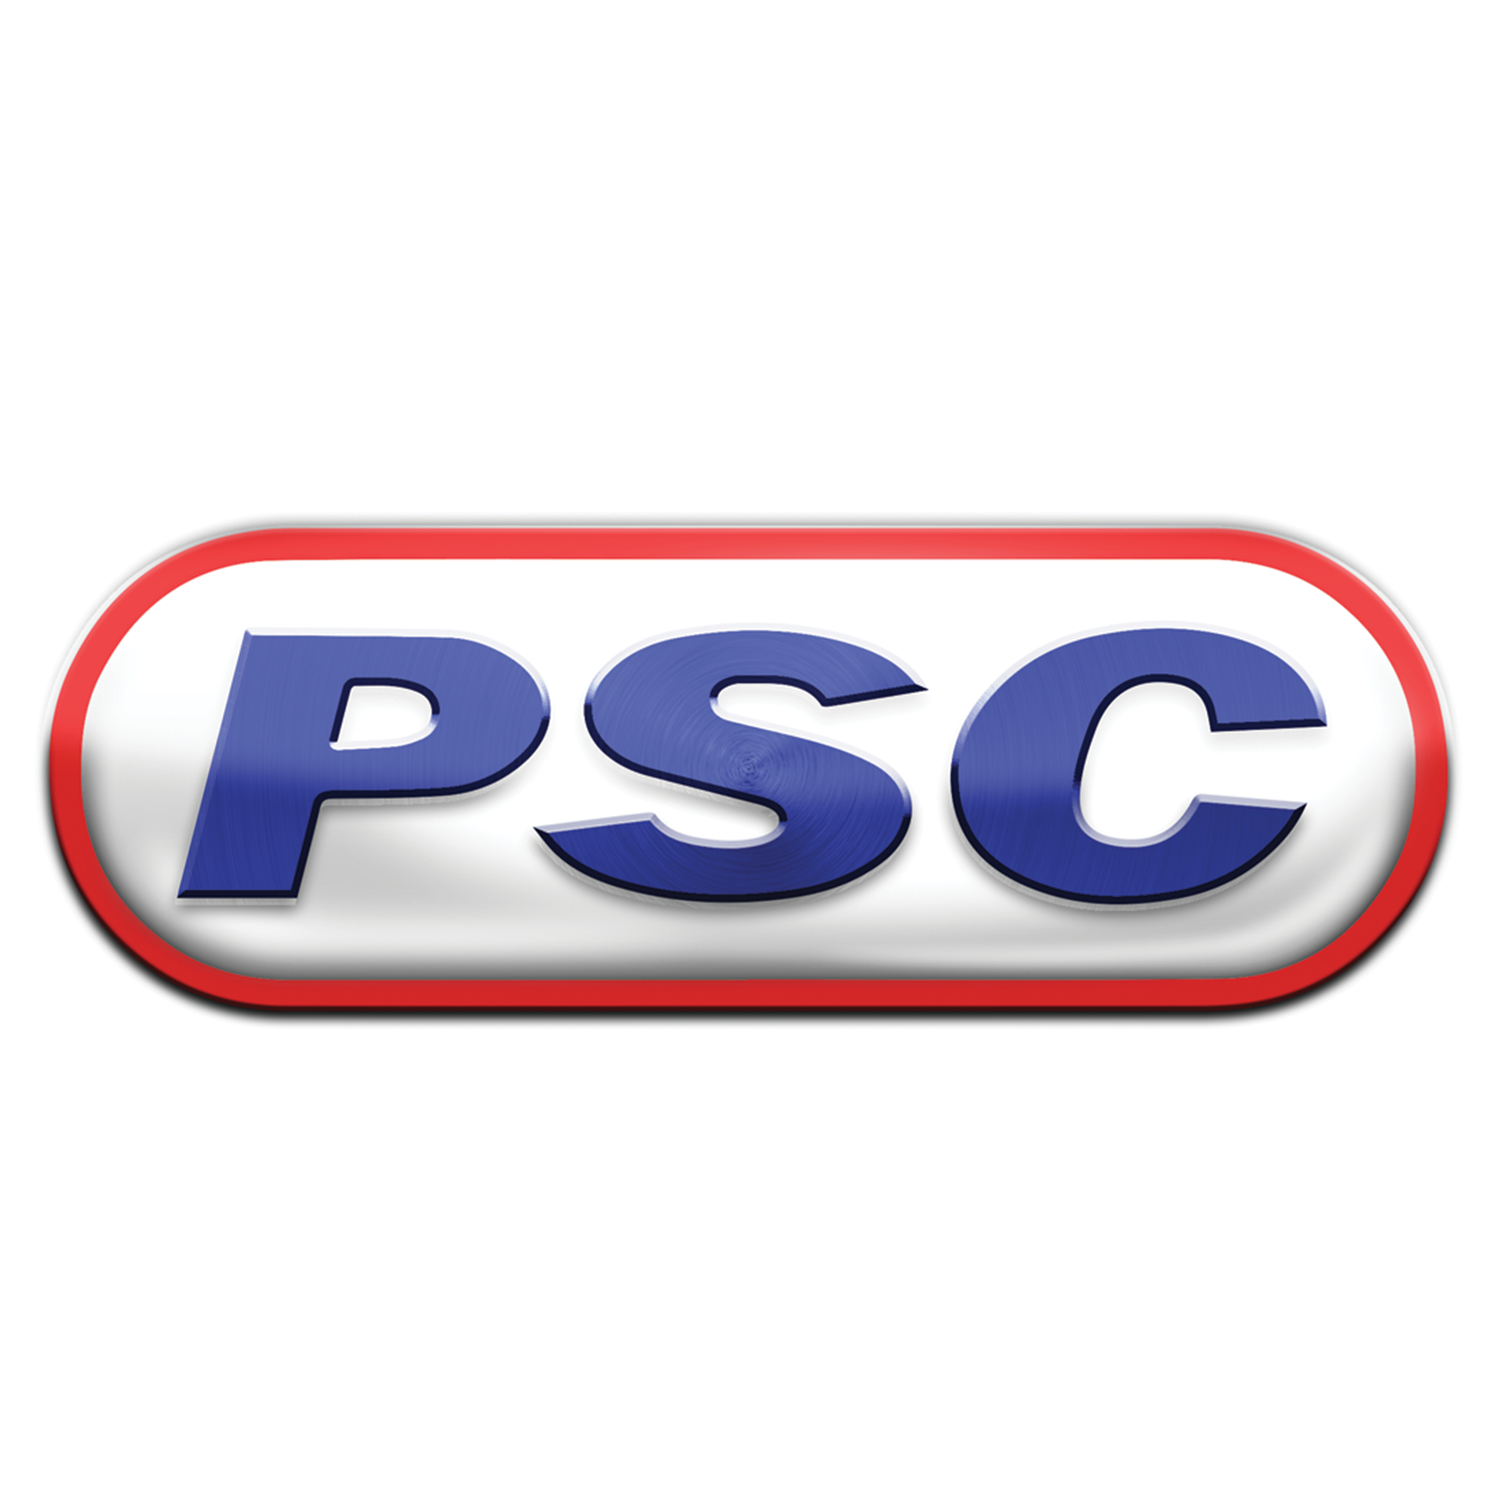 POSS Petroleum Services